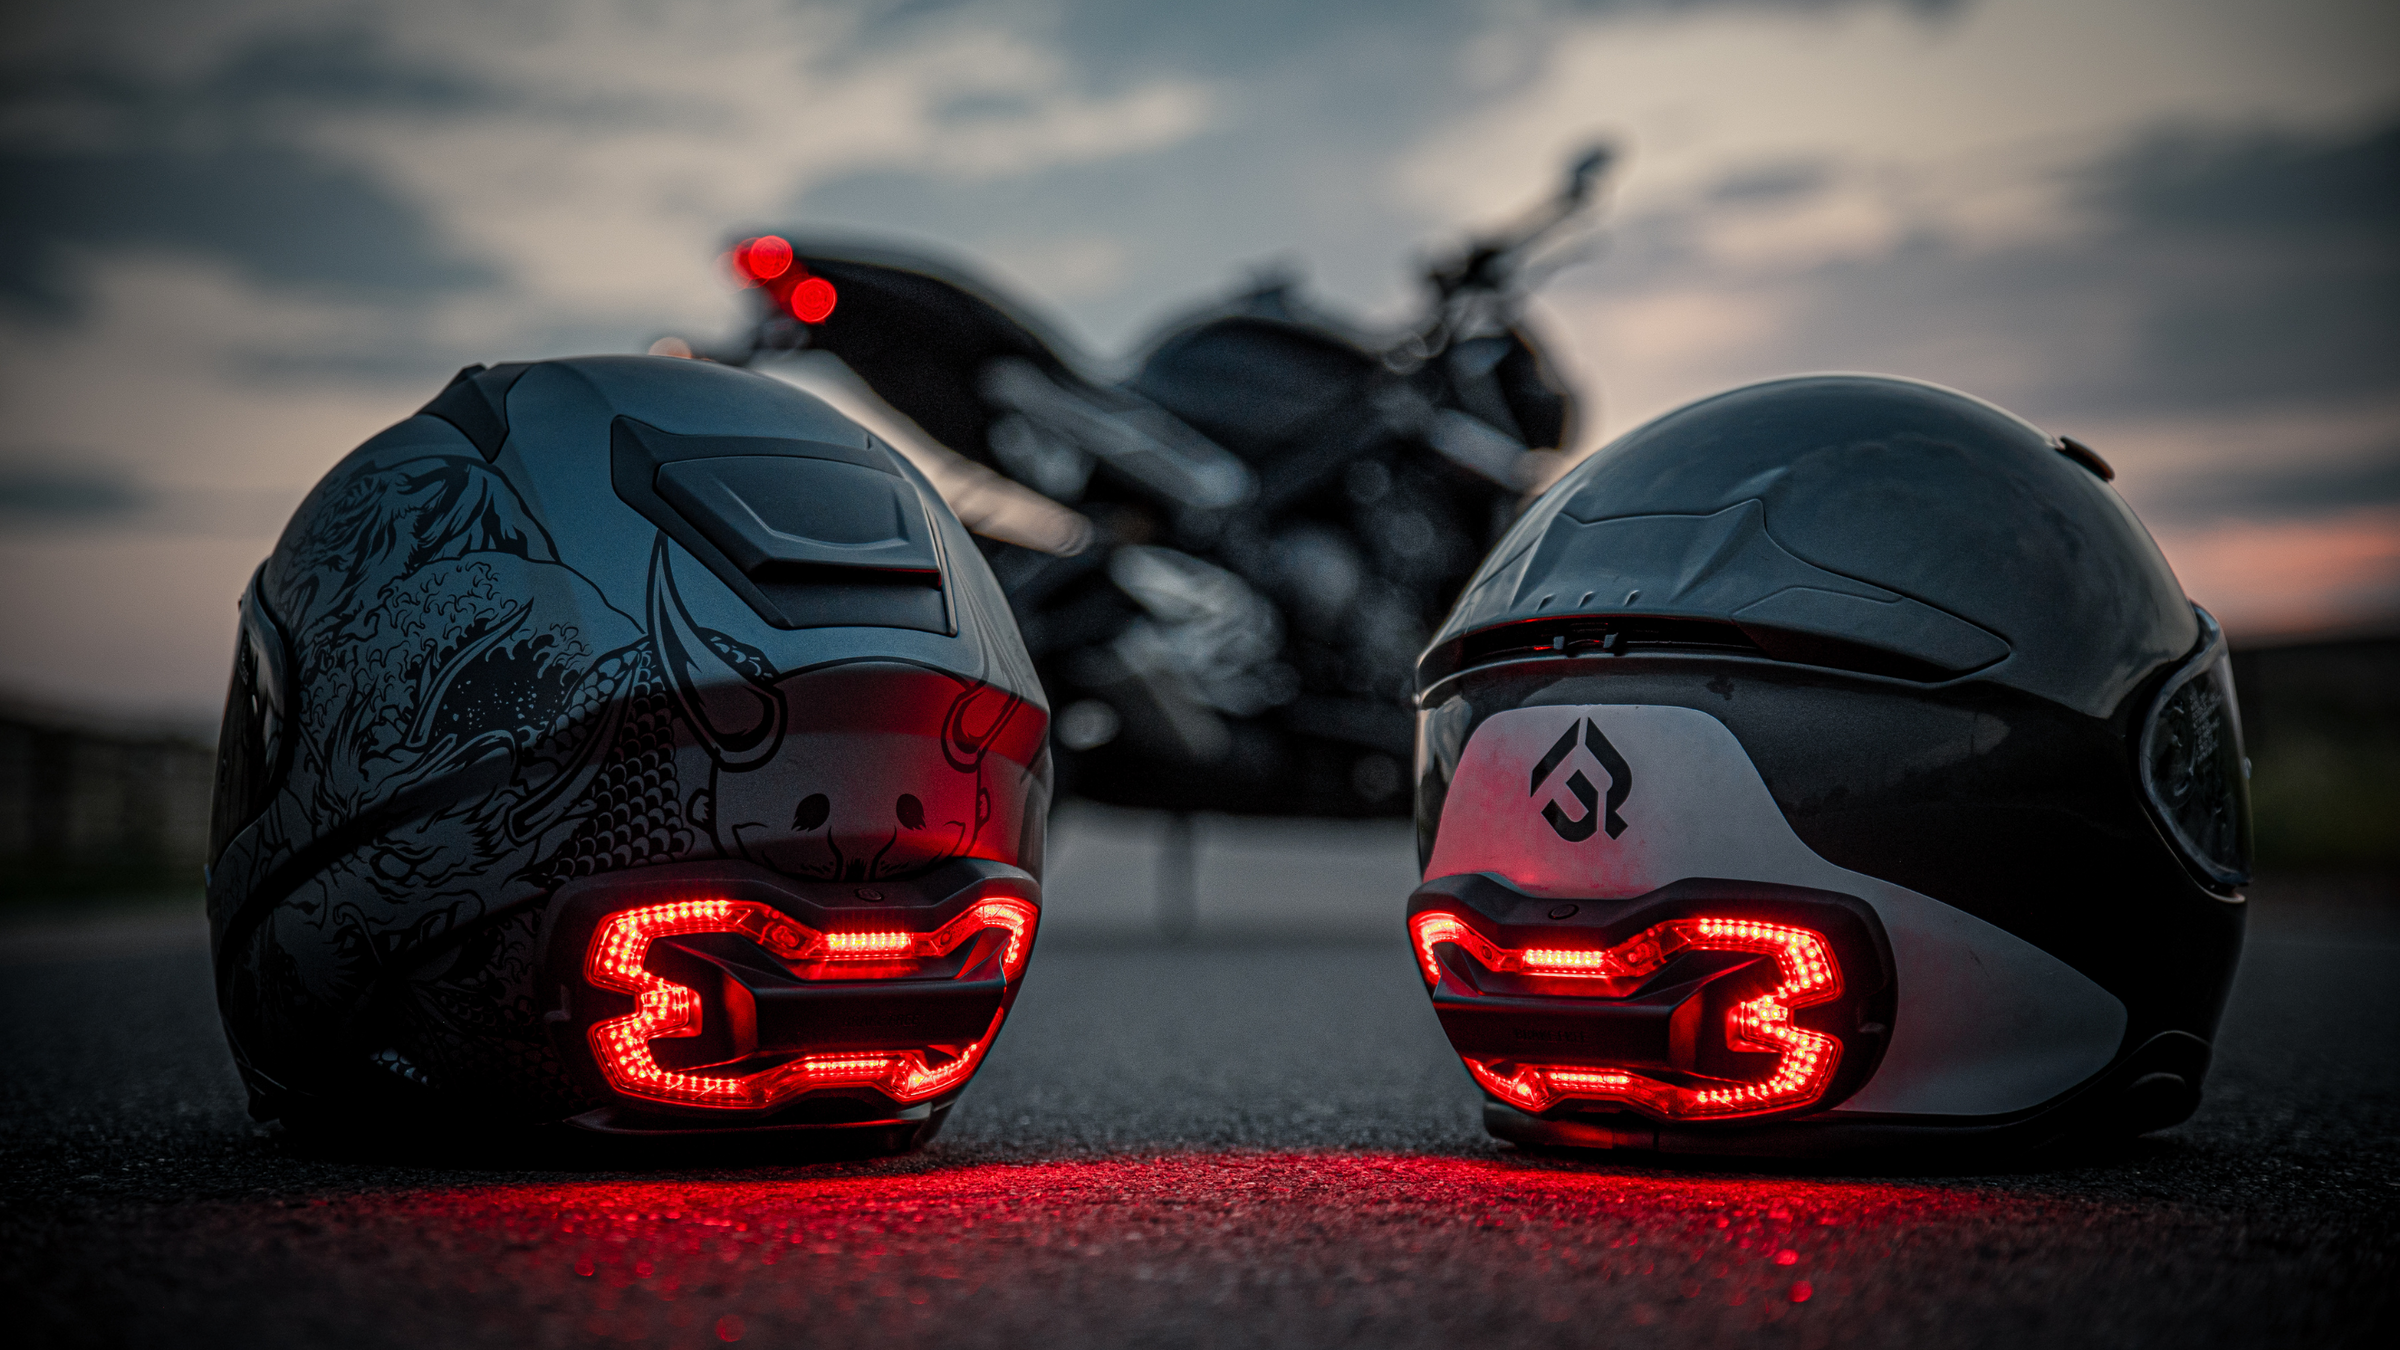 Brake Free smart brake light for motorcycle helmets shown on 2 different helmets